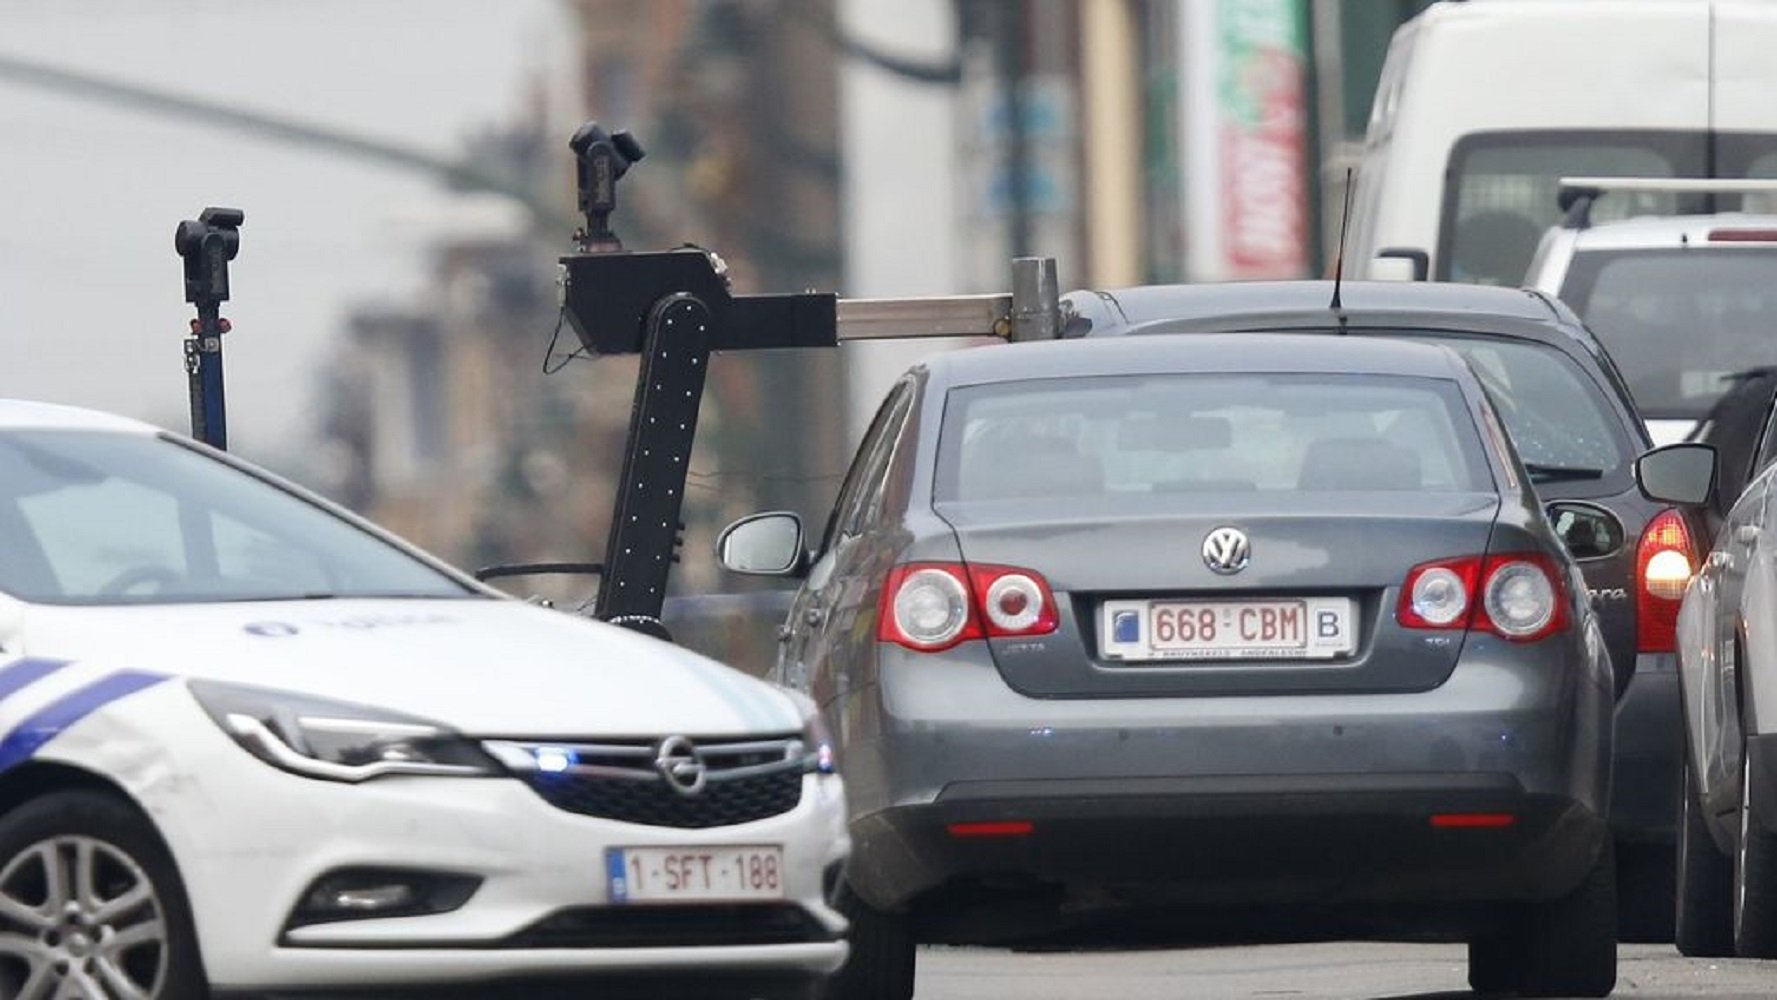 Policías belgas disparan a un vehículo y el conductor declara que llevaba explosivos